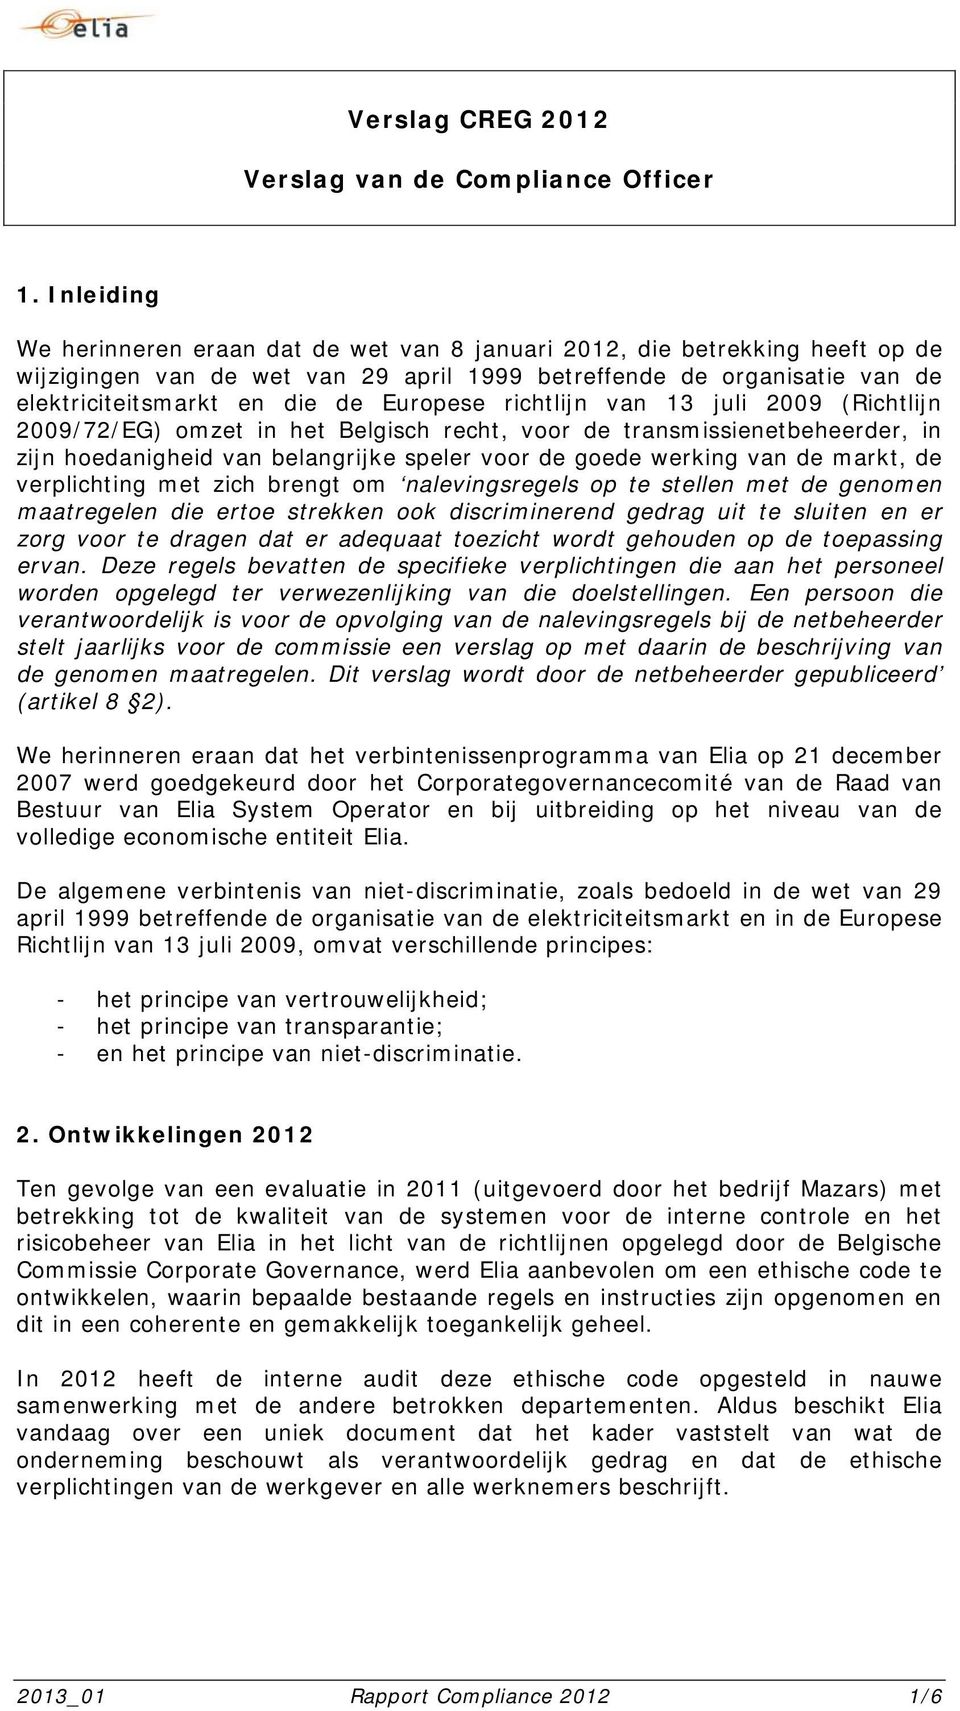 richtlijn van 13 juli 2009 (Richtlijn 2009/72/EG) mzet in het Belgisch recht, vr de transmissienetbeheerder, in zijn hedanigheid van belangrijke speler vr de gede werking van de markt, de